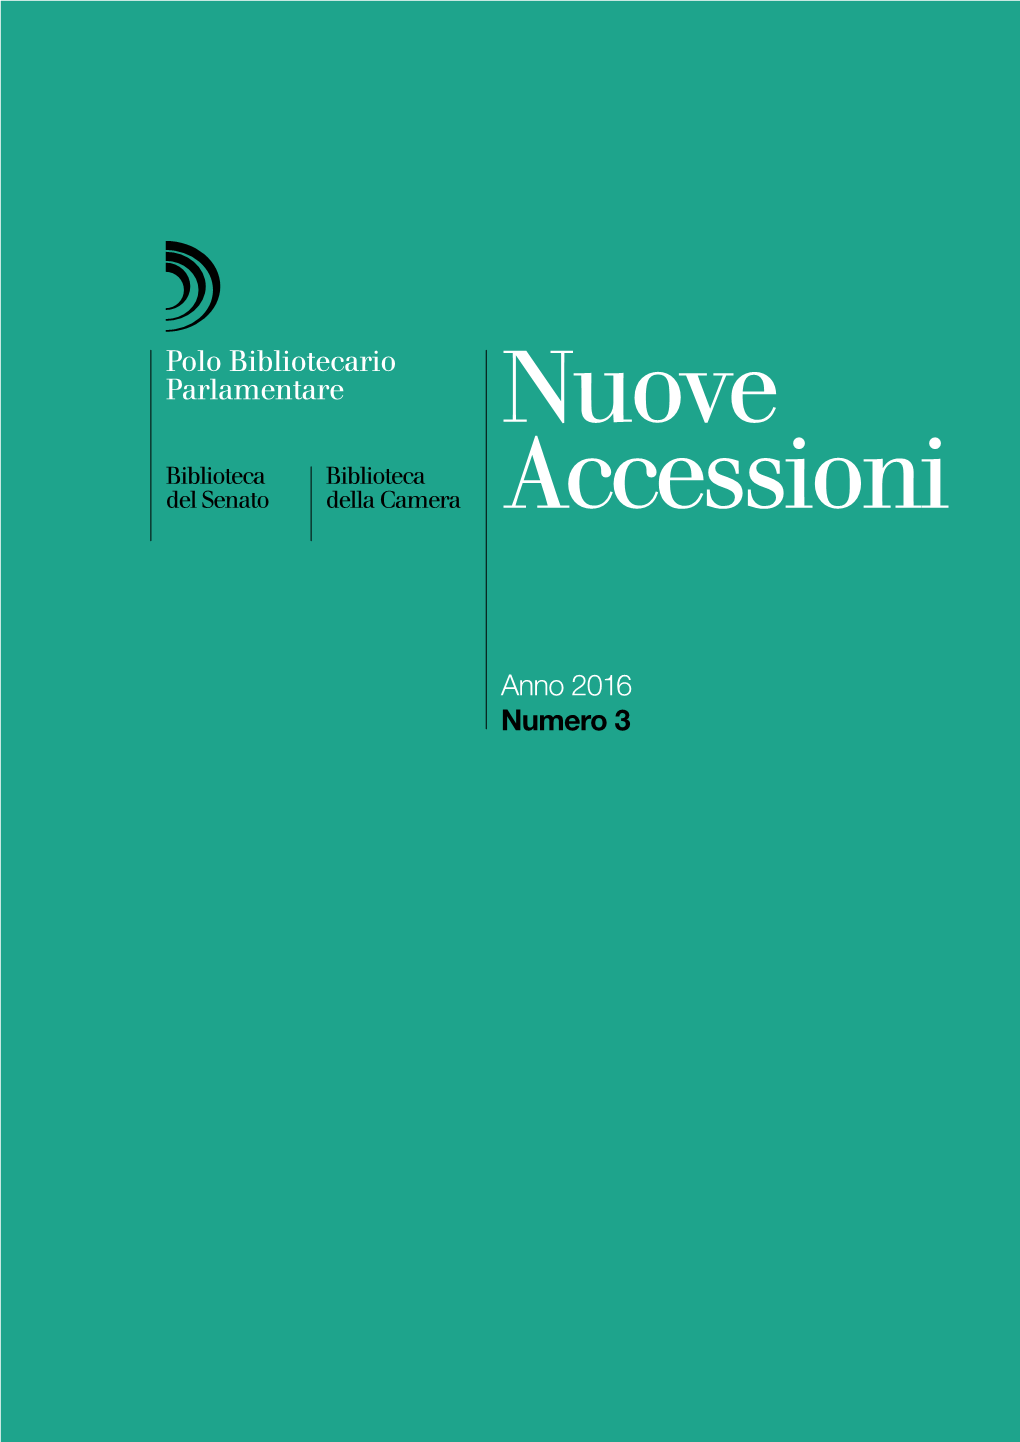 Nuove Accessioni Del Polo Bibliotecario Parlamentare, 2016 N. 3